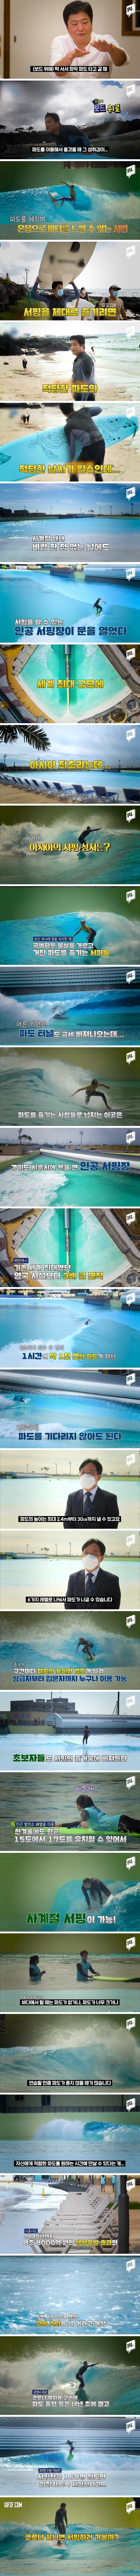 한국에 생긴 세꼐 최대 인공 서핑장.jpg